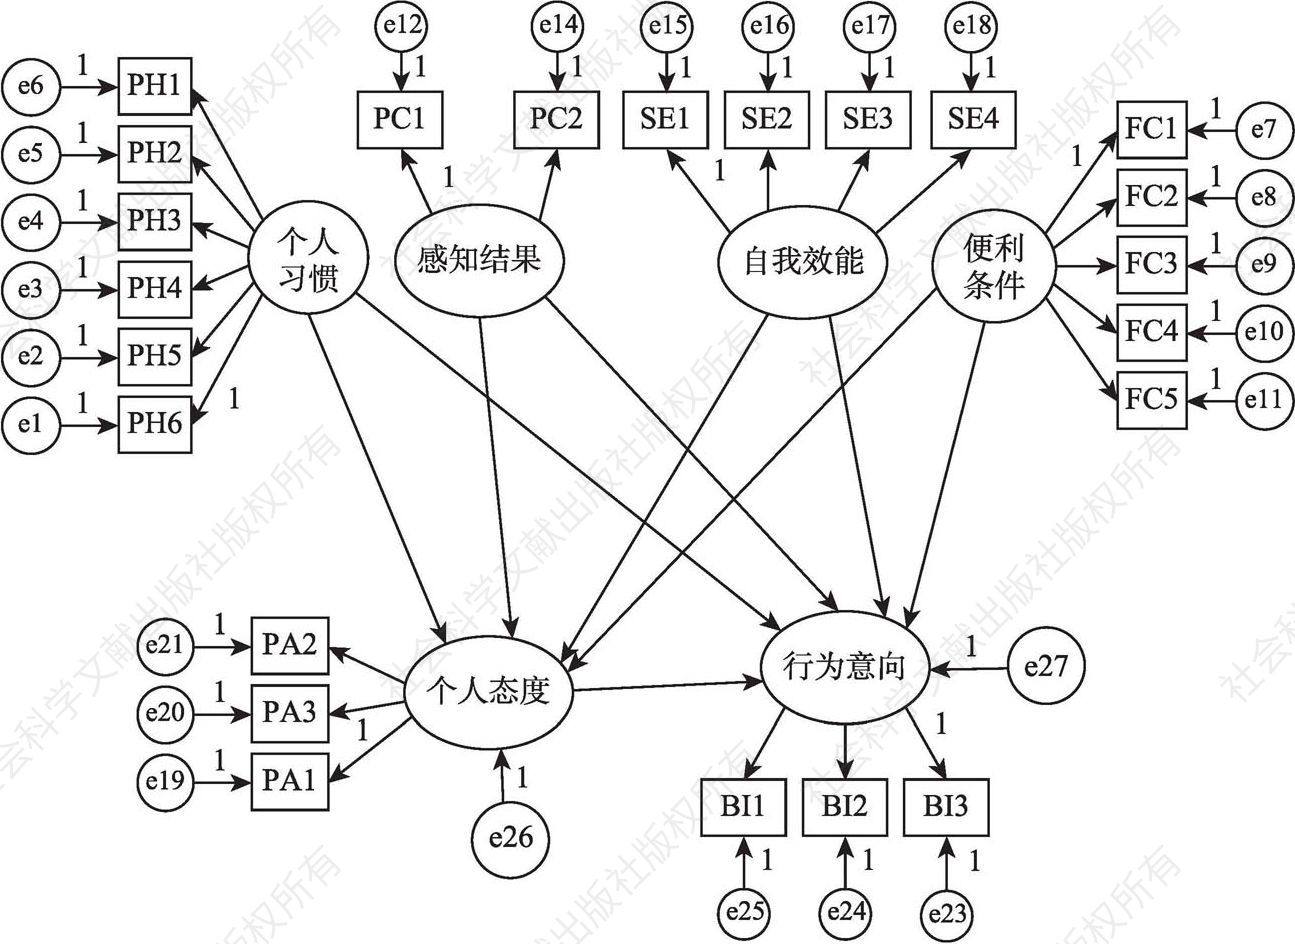 图8-1 科研人员个人学术信息管理行为影响因素结构方程模型路径